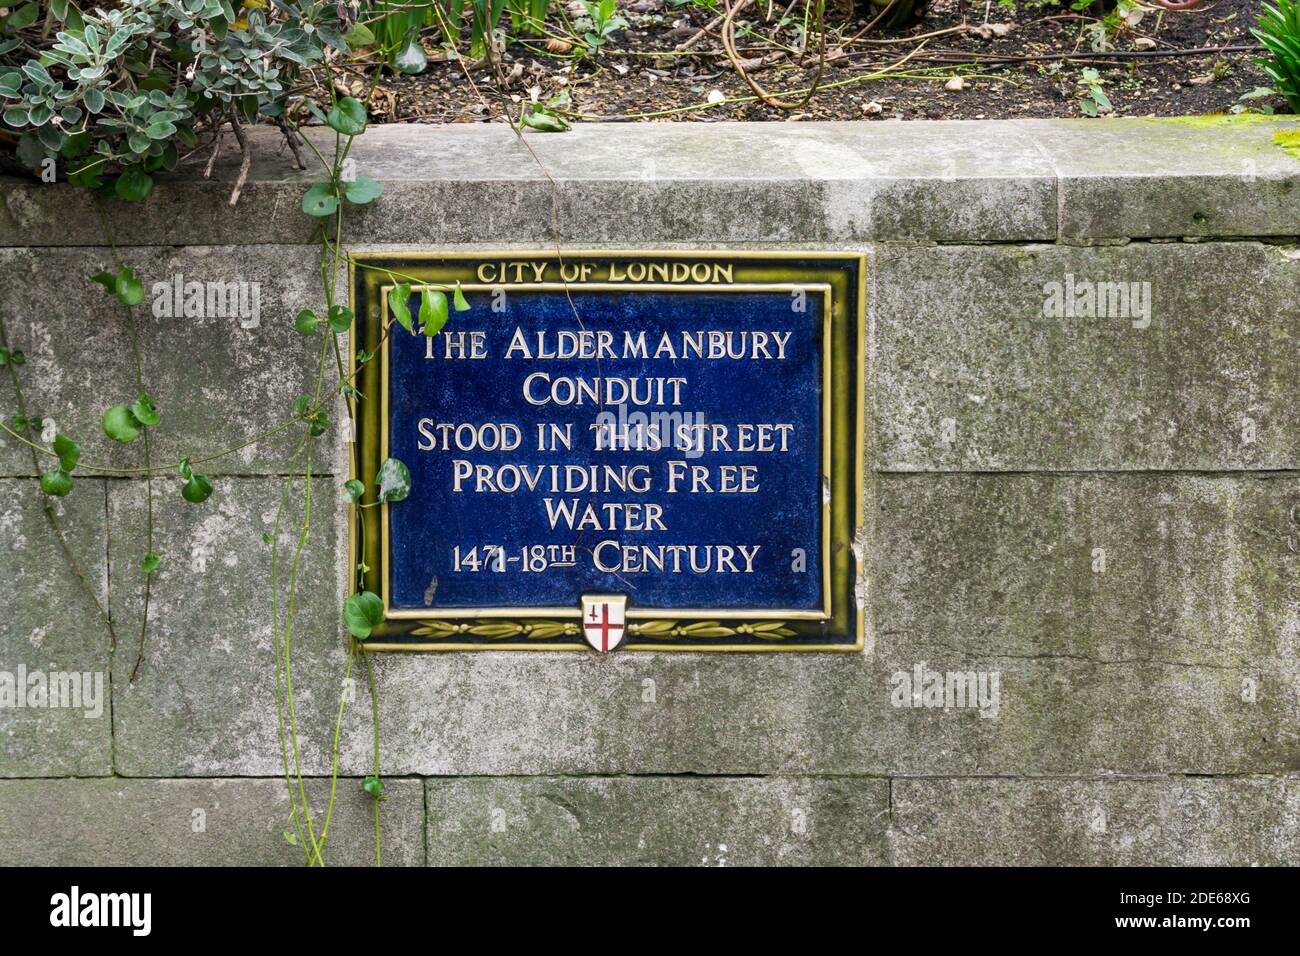 Eine blaue Tafel in Aldermanbury dokumentiert den Standort des Aldermanbury Conduit, der die Stadt mit frischem Wasser versorgt hat. Stockfoto